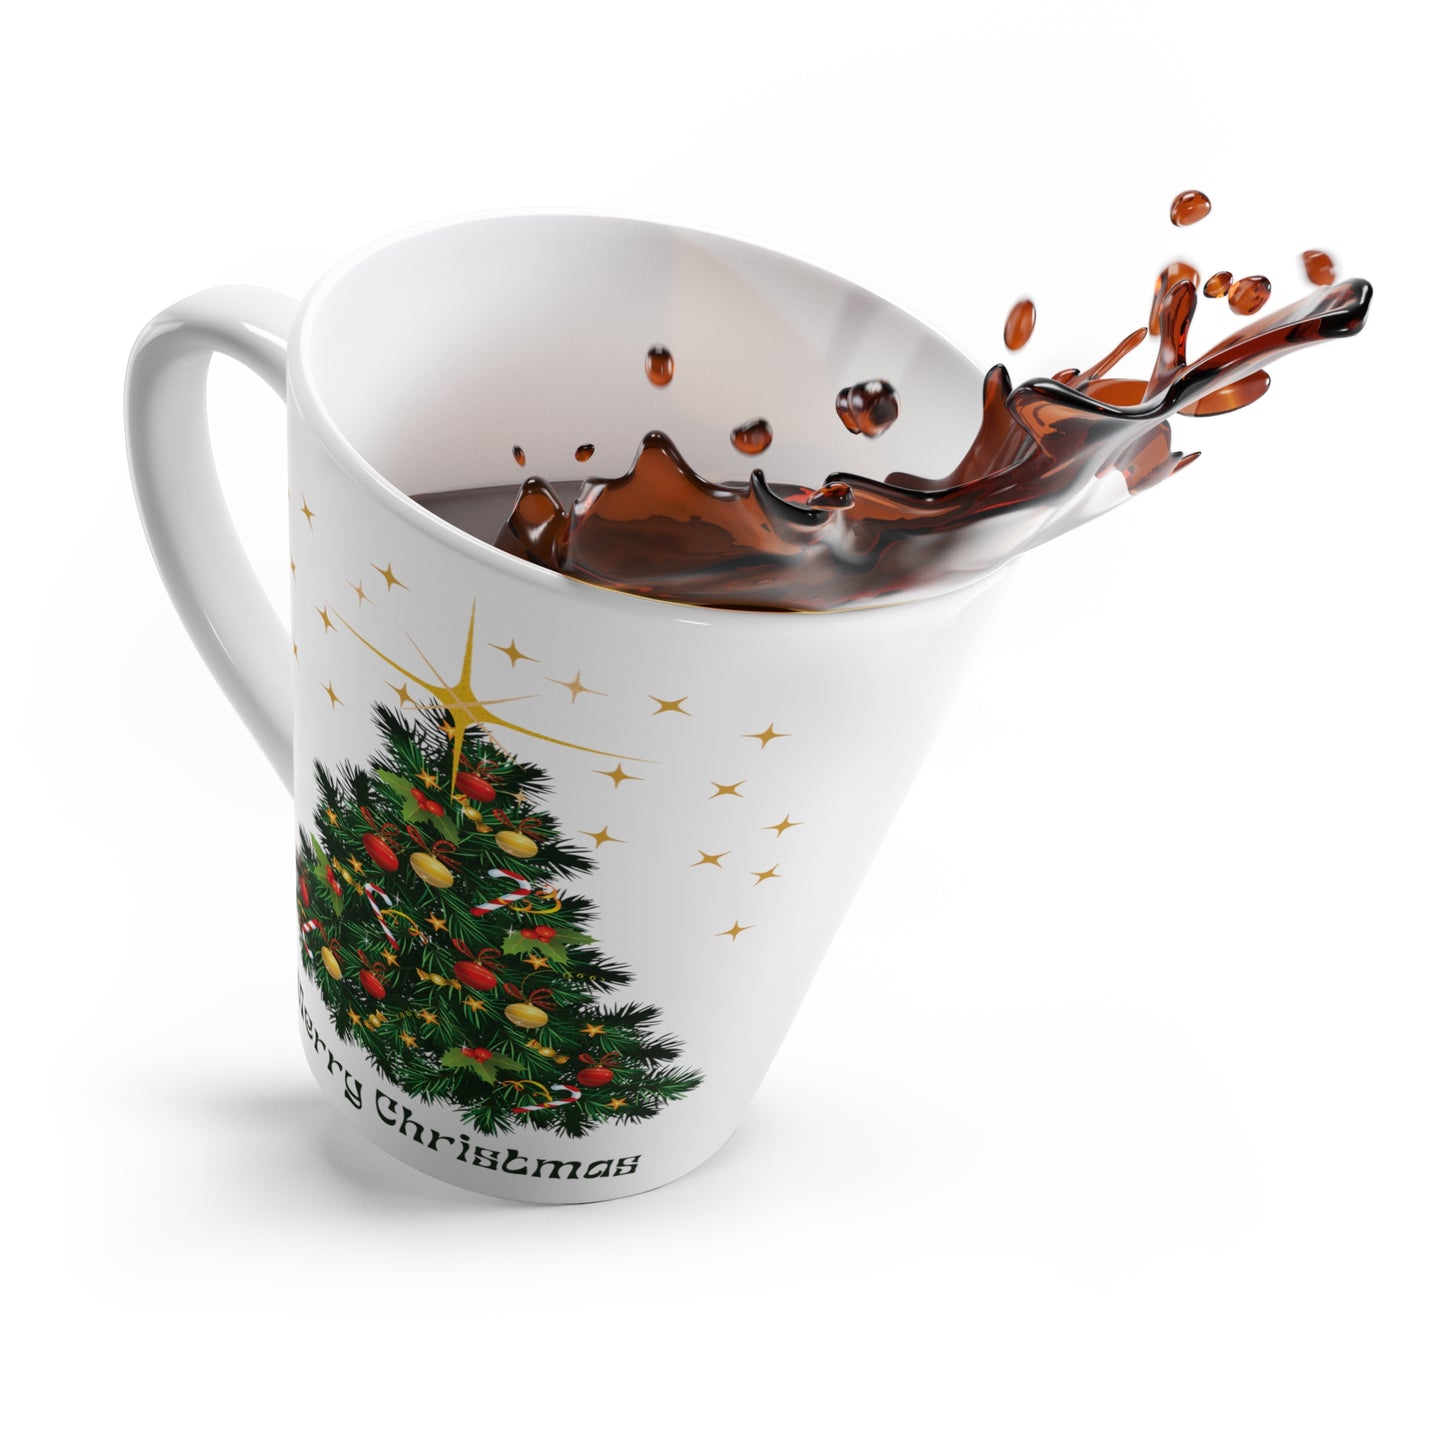 Christmas Tree Printed Latte Coffee Mug, Green 12oz